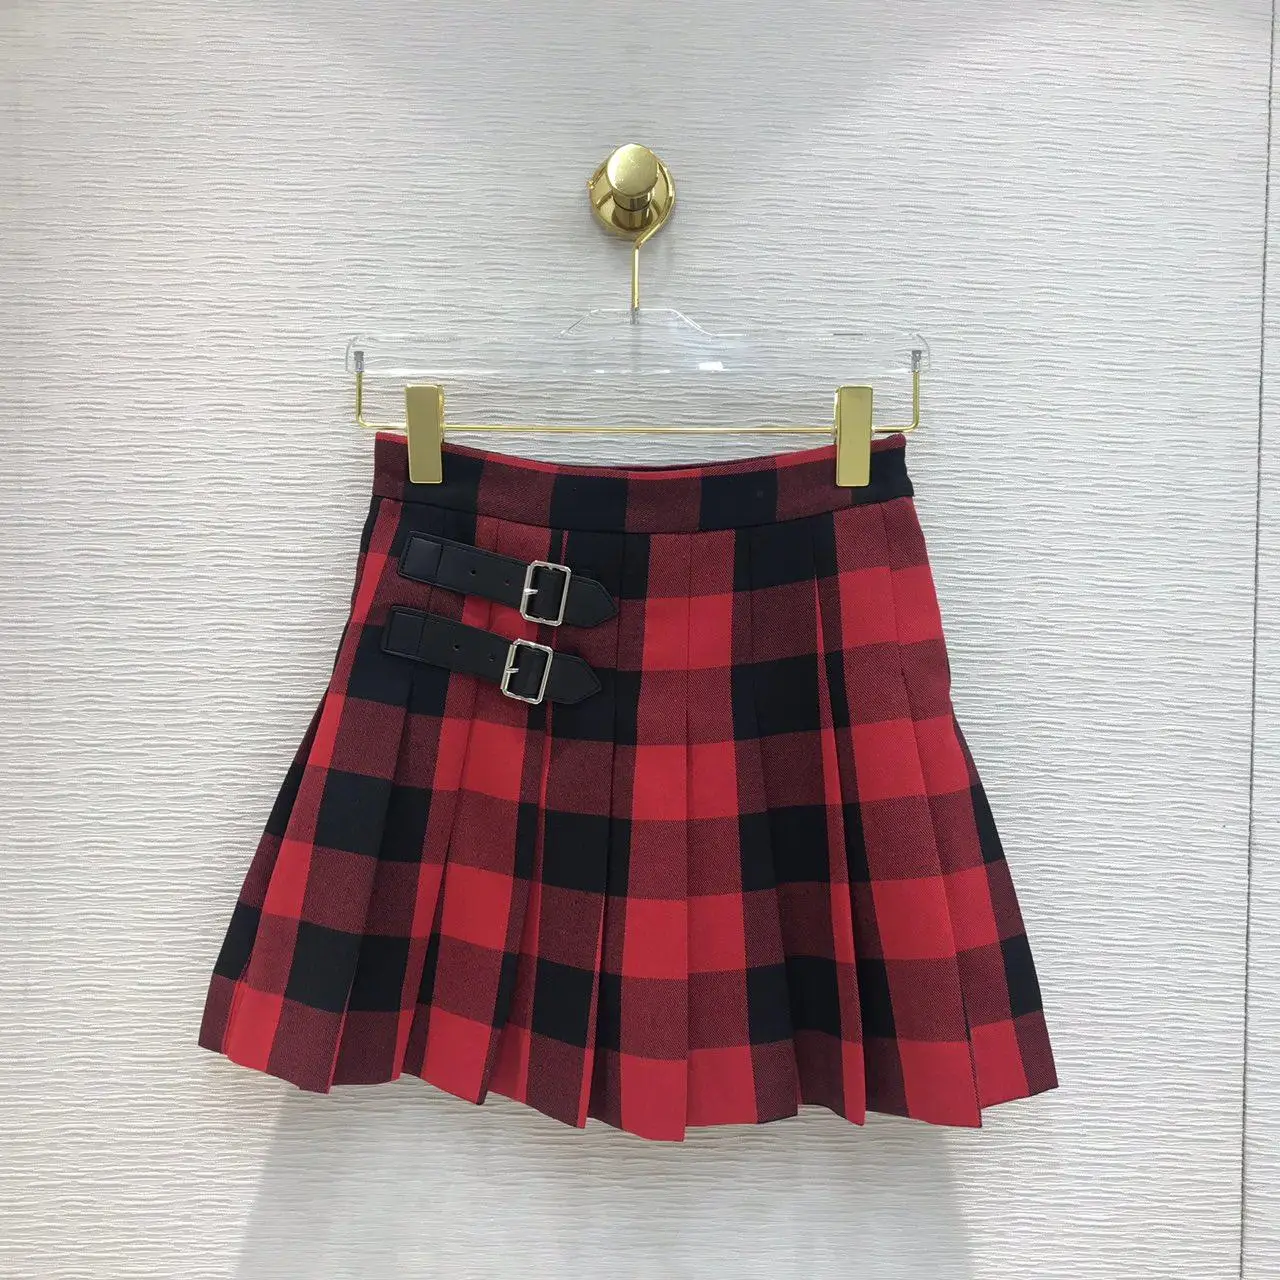 Новая Женская мода Сексуальная кожаная пряжка плиссированная шикарная юбка 0902